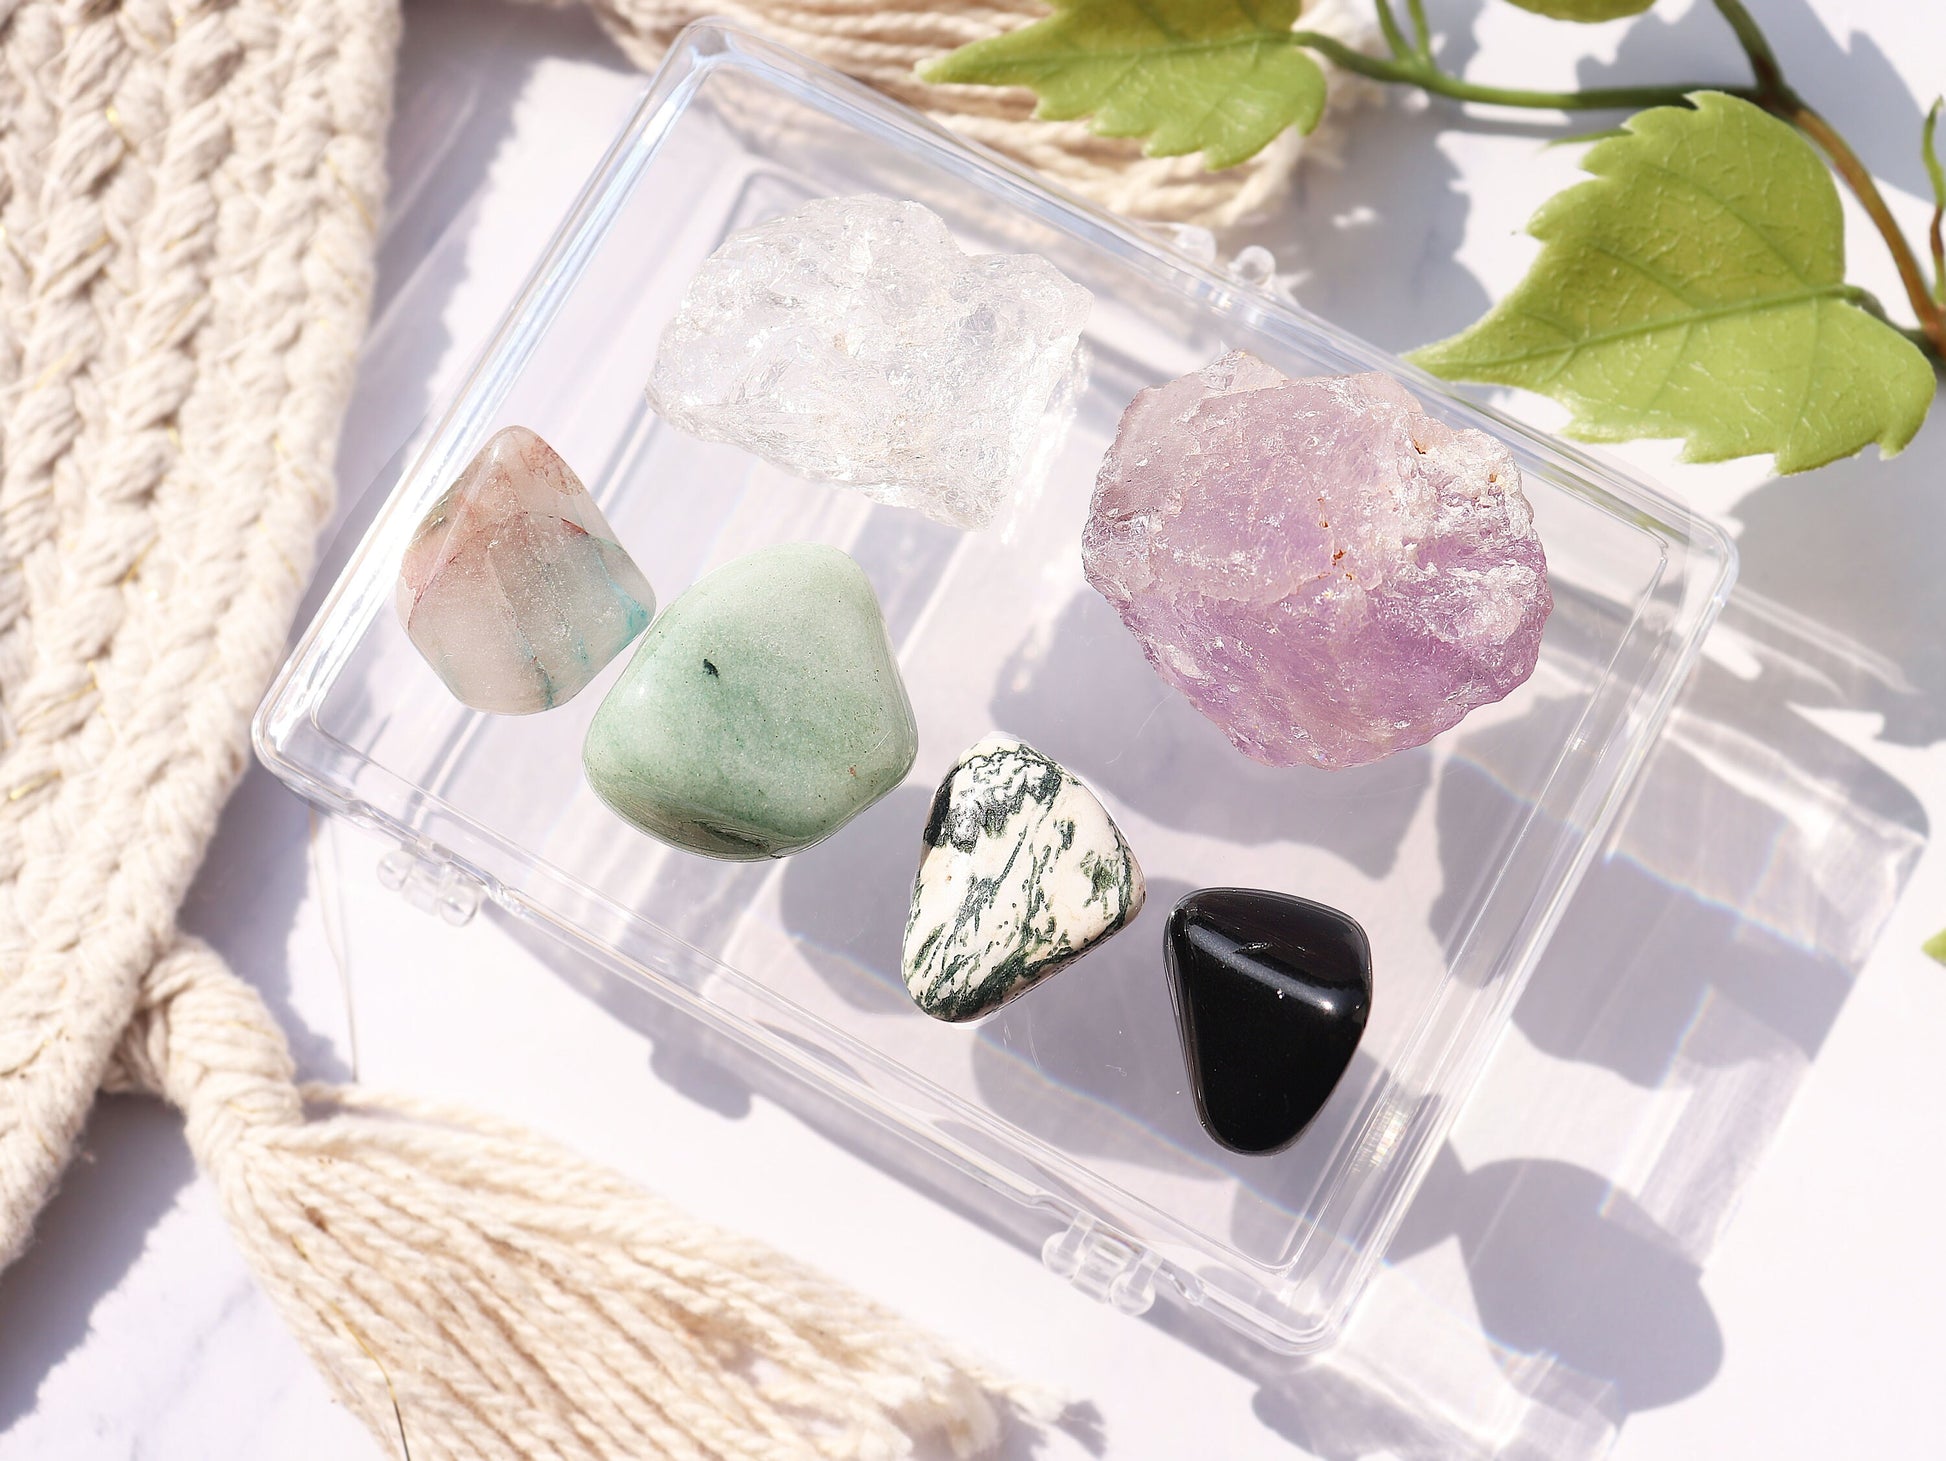 Pocket Meditating Crystals Kit, Gemstones for Creativity, Strength, Serenity, Beginner Crystal Kits